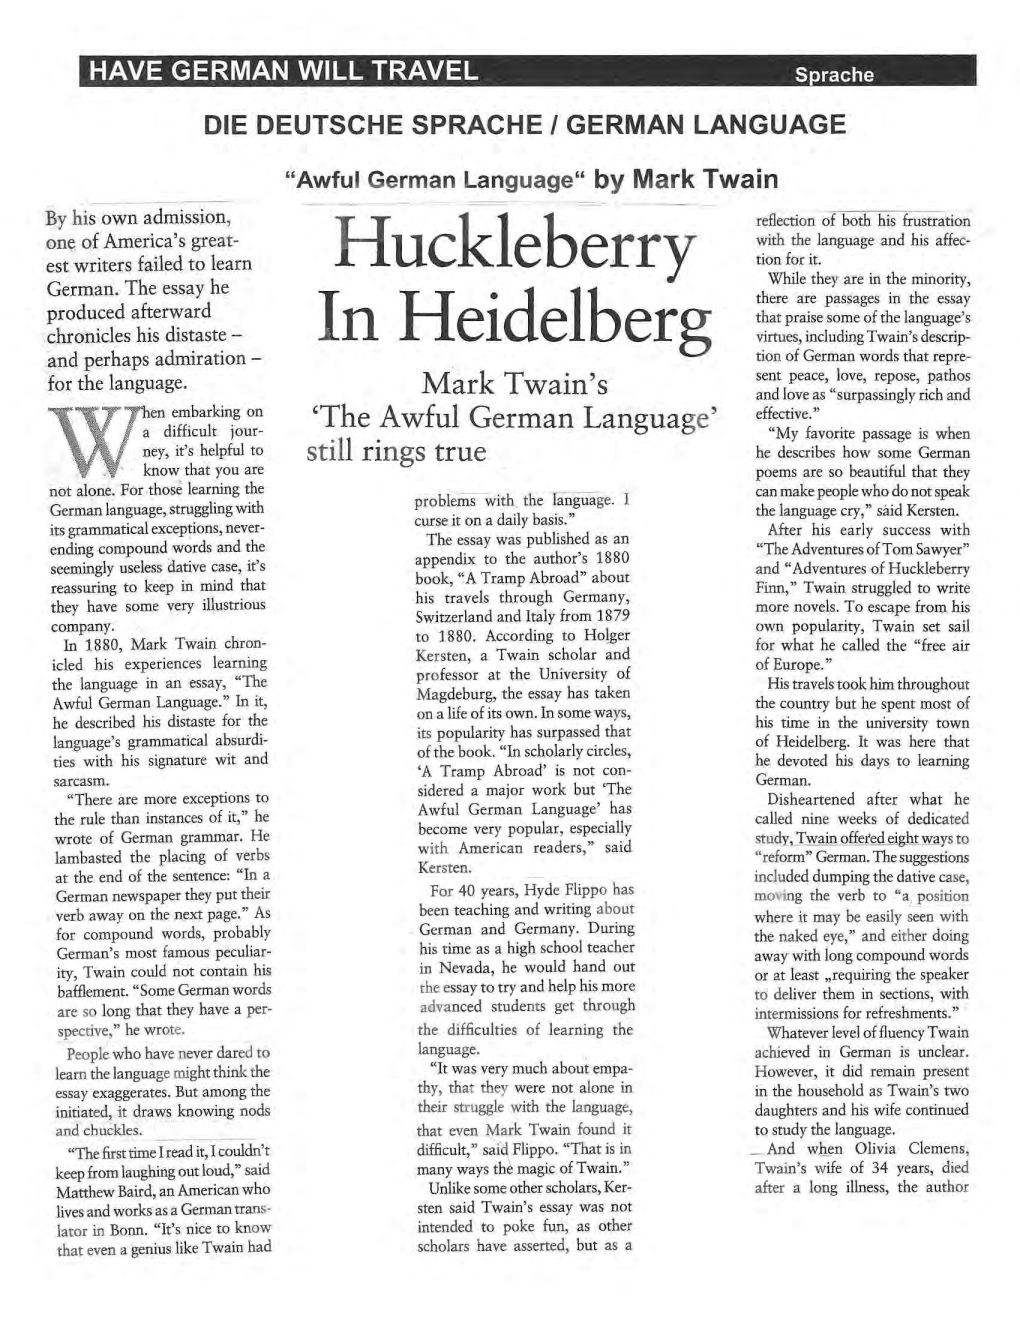 Huckleberry in Heidelberg